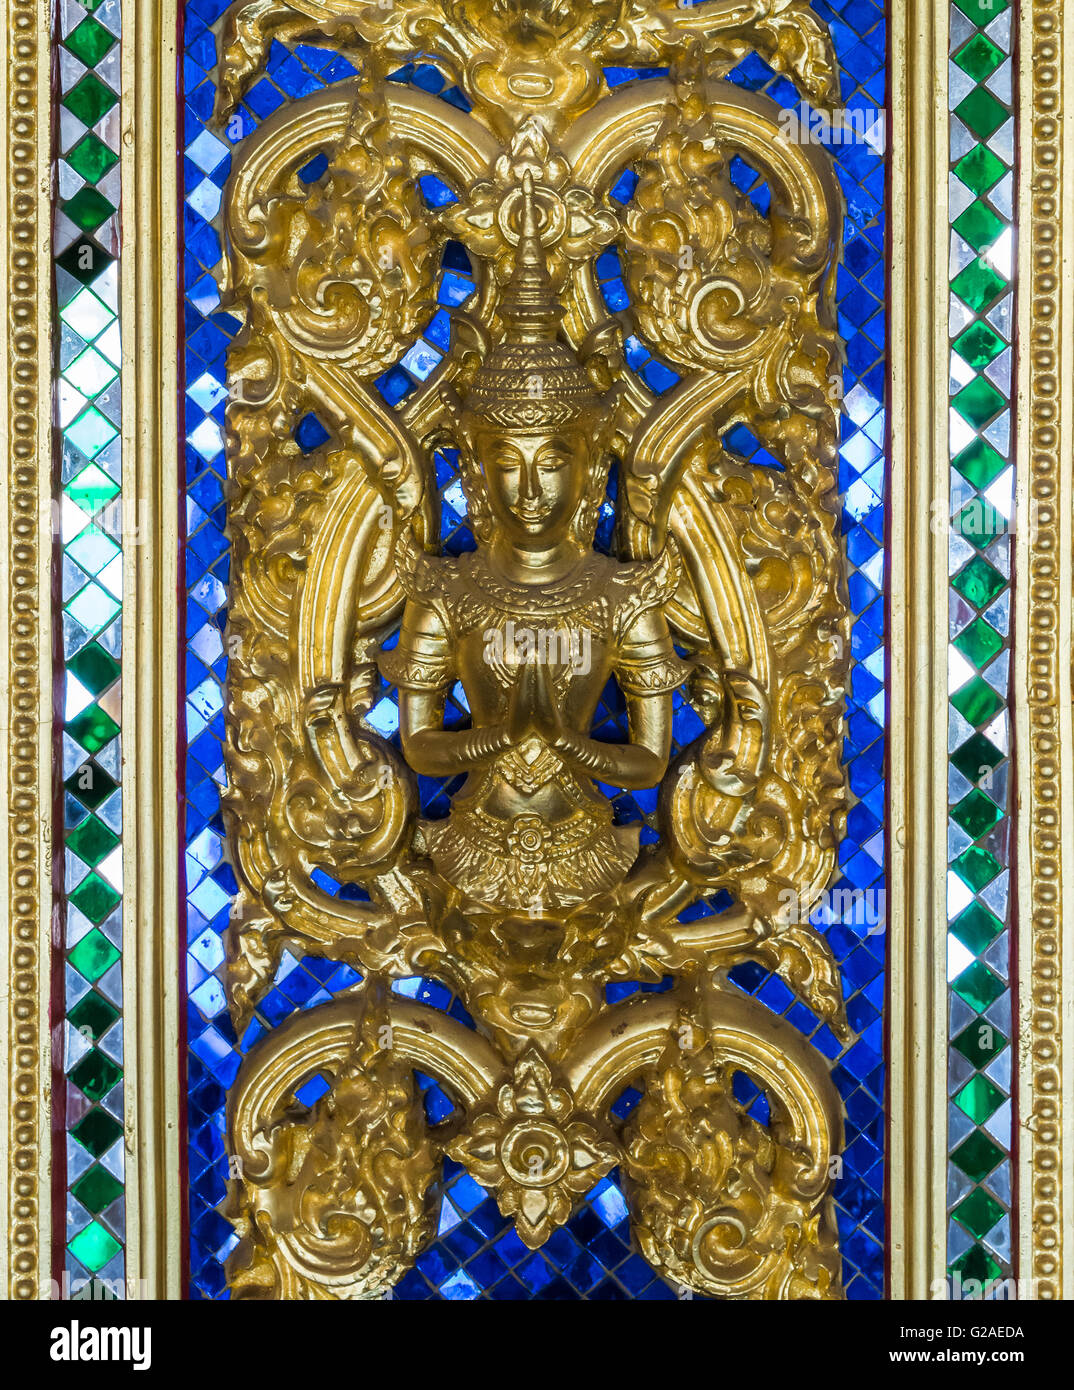 Goldene verlangen Engel auf dem blauen Glas von der Tür des Tempels, Thailand. Stockfoto